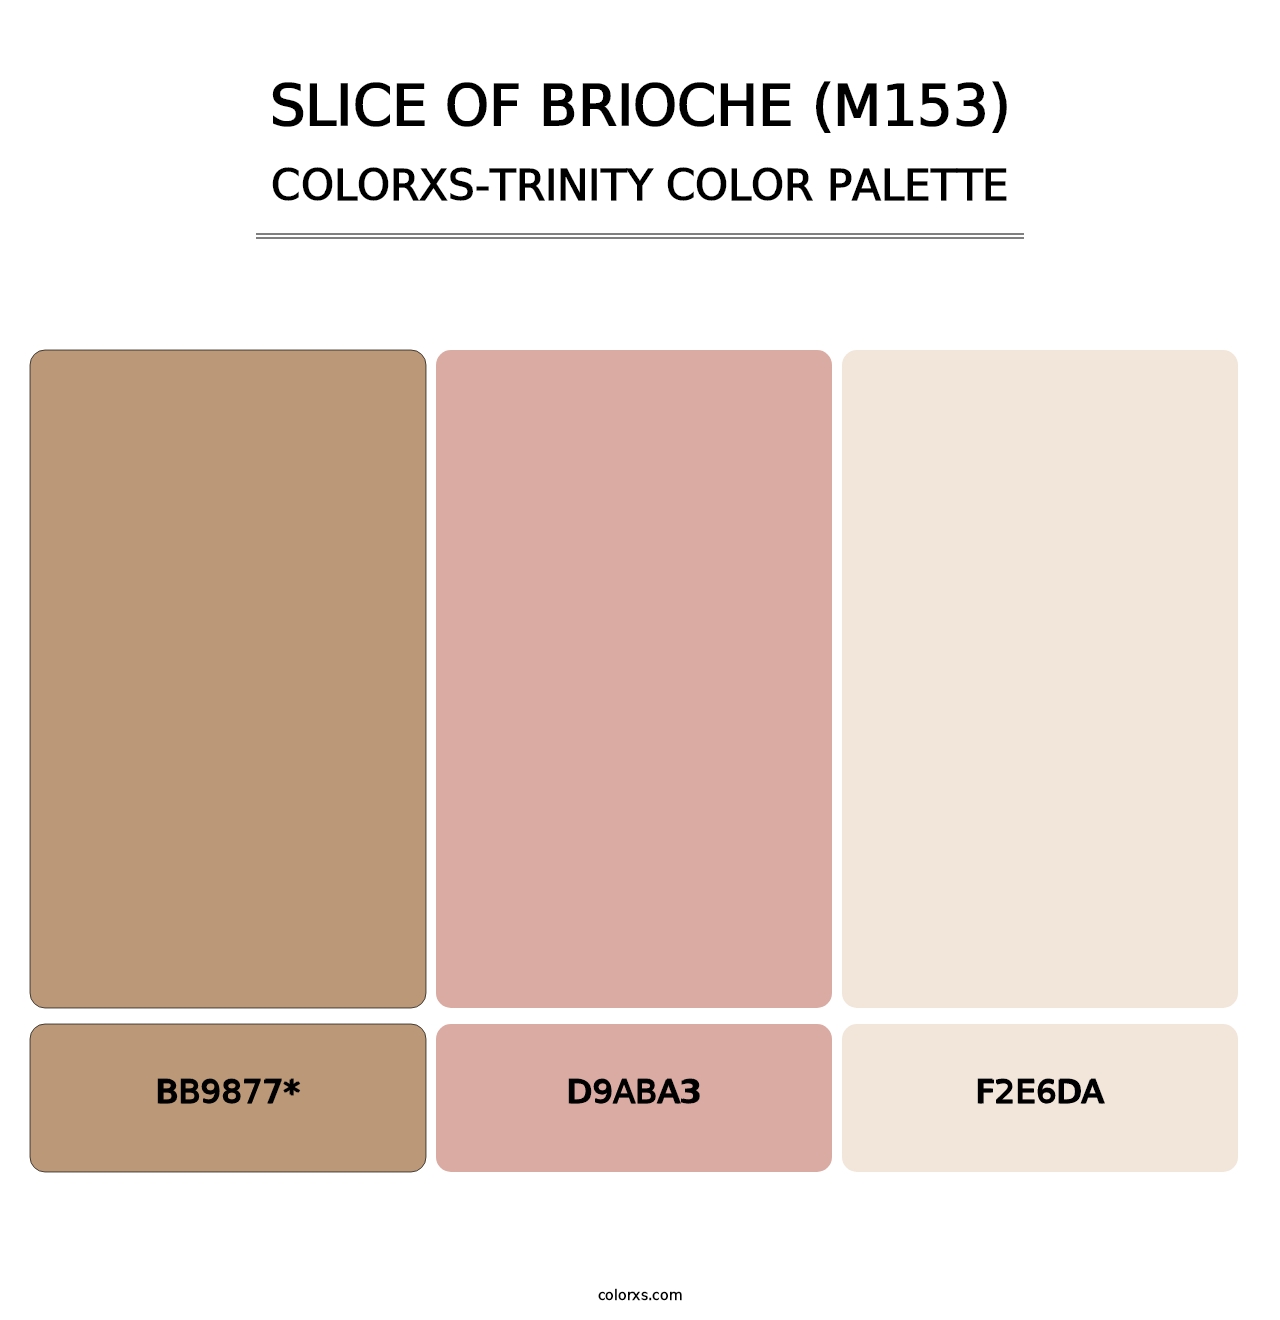 Slice of Brioche (M153) - Colorxs Trinity Palette